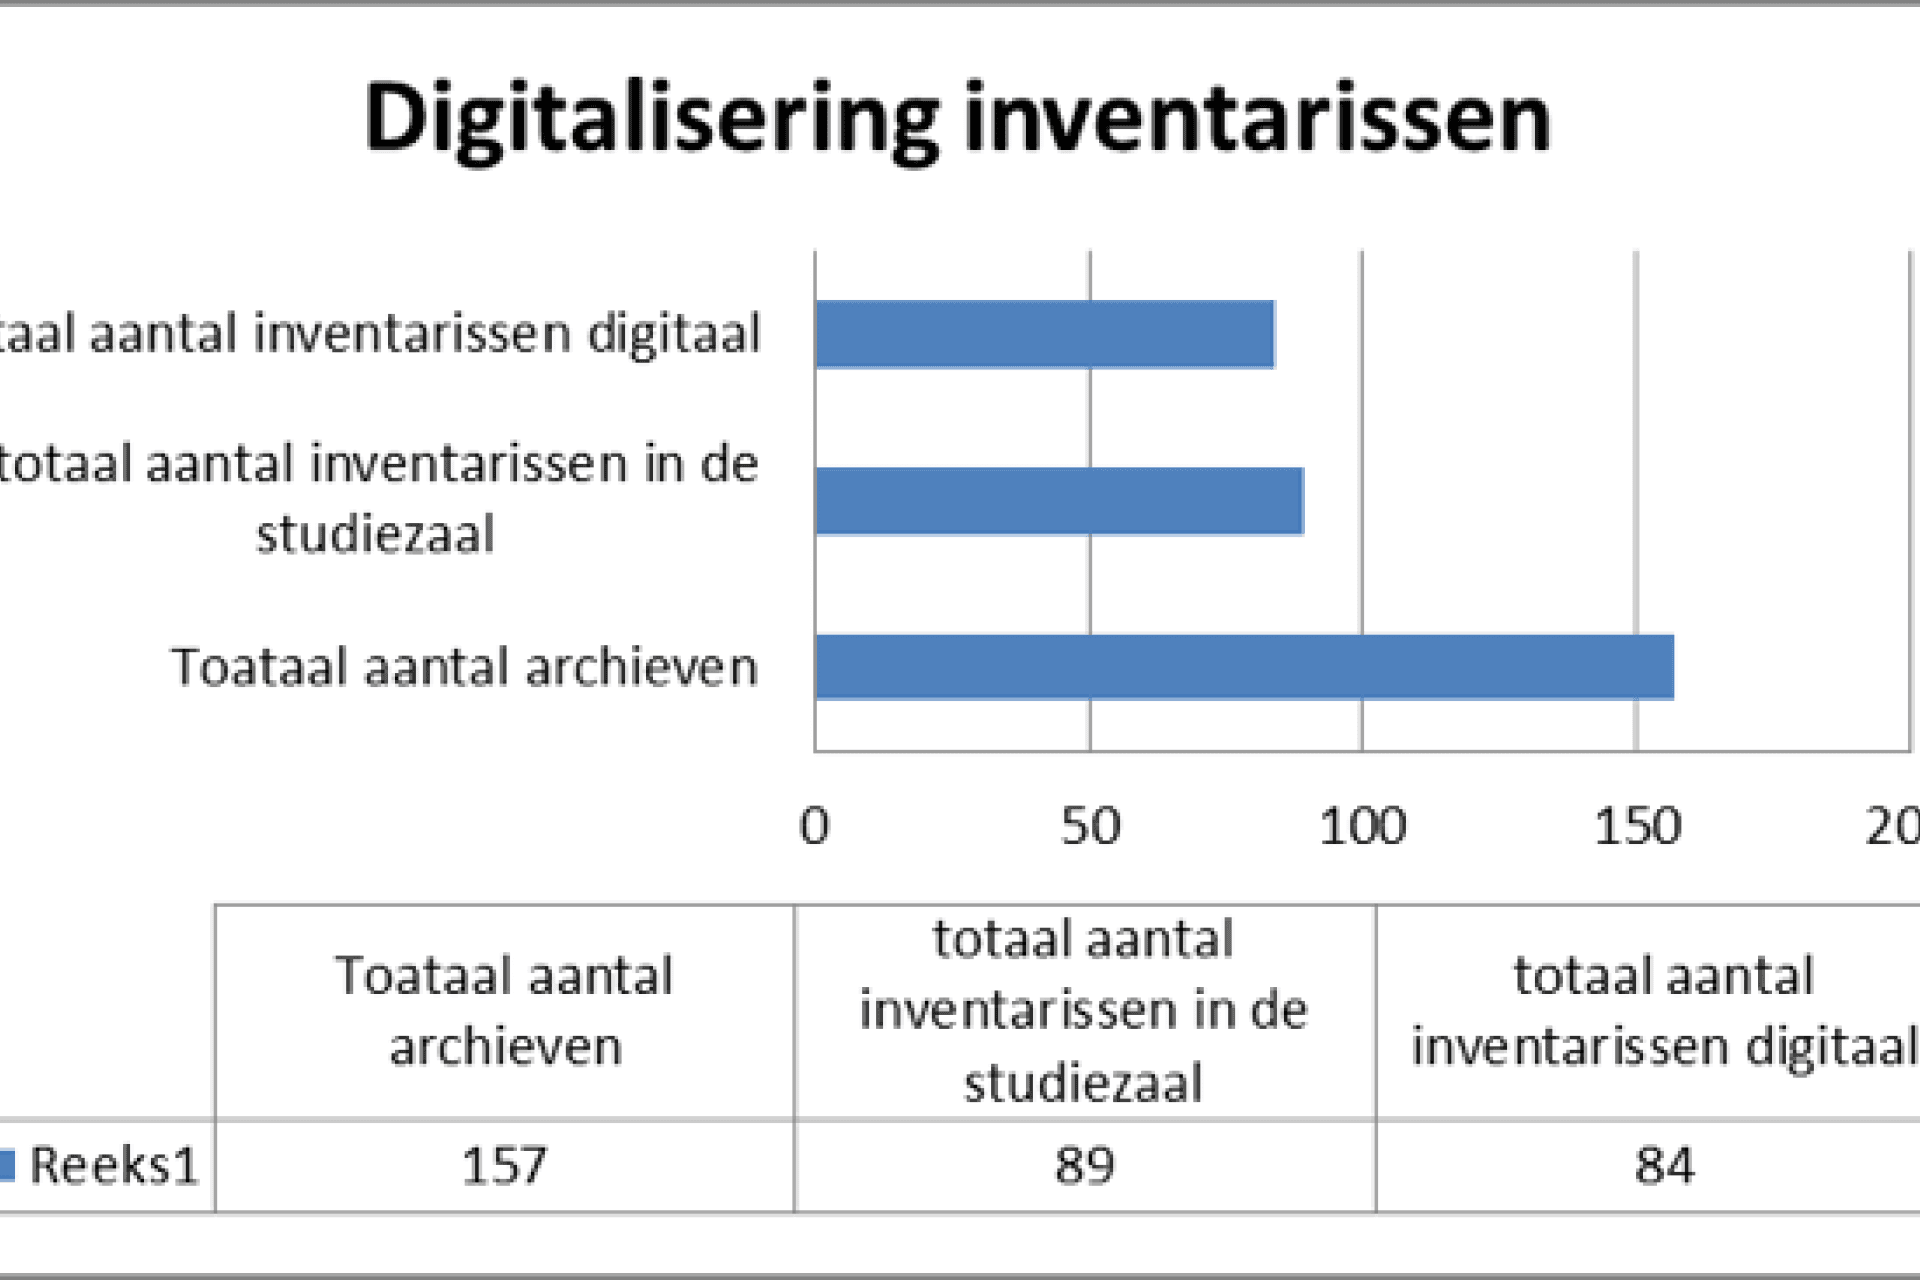 grafiek: Totaal aantal archieven = 157. Totaal aantal inventarissen digitaal = 84. Totaal aantal inventarissen in de studiezaal = 89.